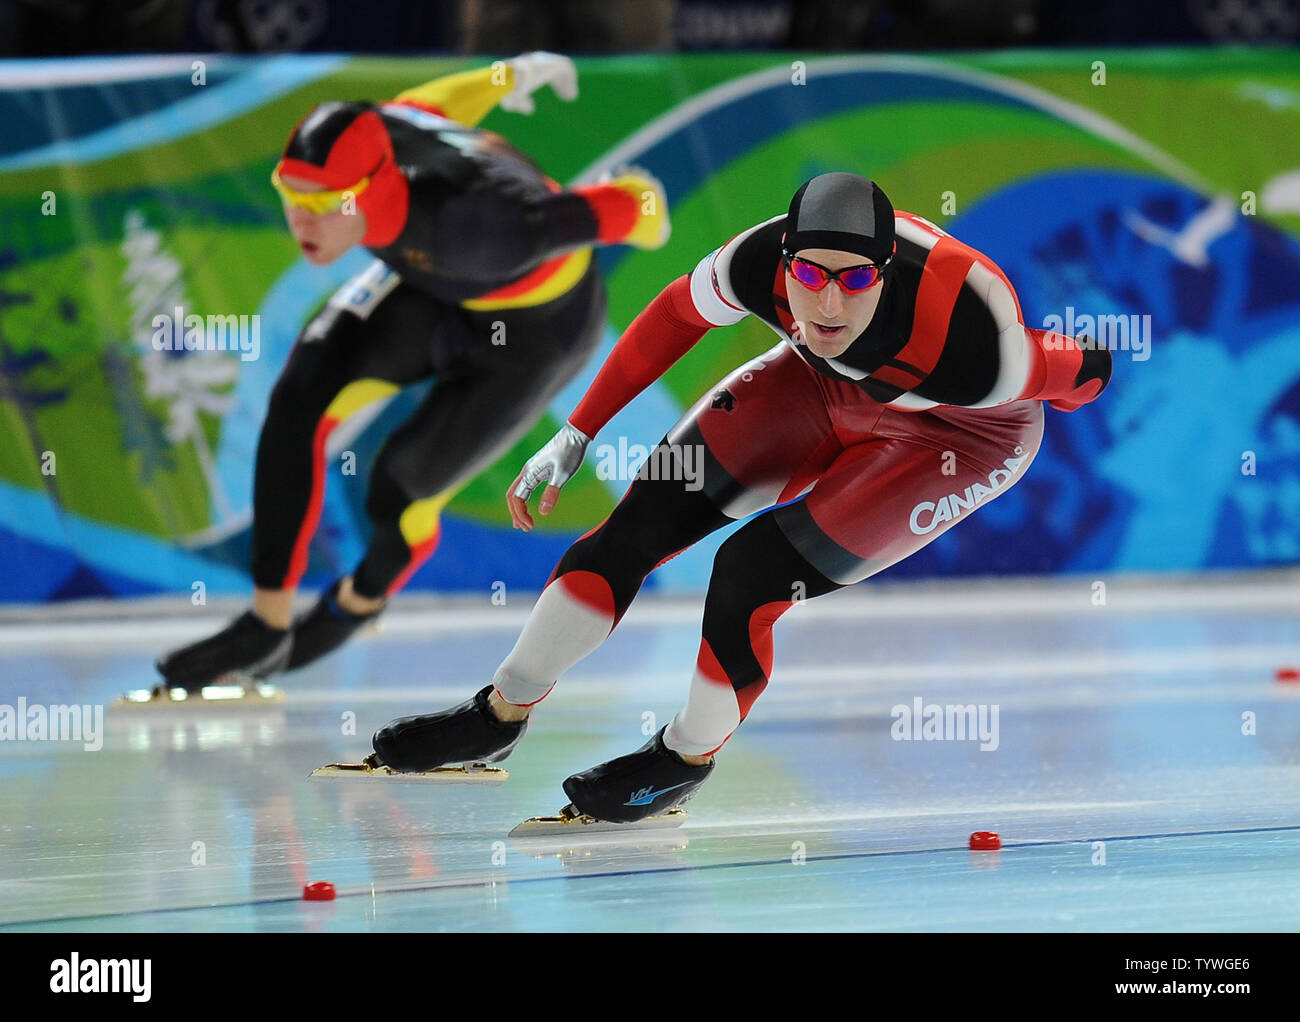 Kanadas Kyle Parrott (R) und dem Deutschen Nico Ihle konkurrieren in der Männer 1000 m Eisschnelllauf im Richmond Olympic Oval in Vancouver, Kanada, während der Olympischen Winterspiele 2010 Am 17. Februar 2010. UPI/Roger L. Wollenberg Stockfoto